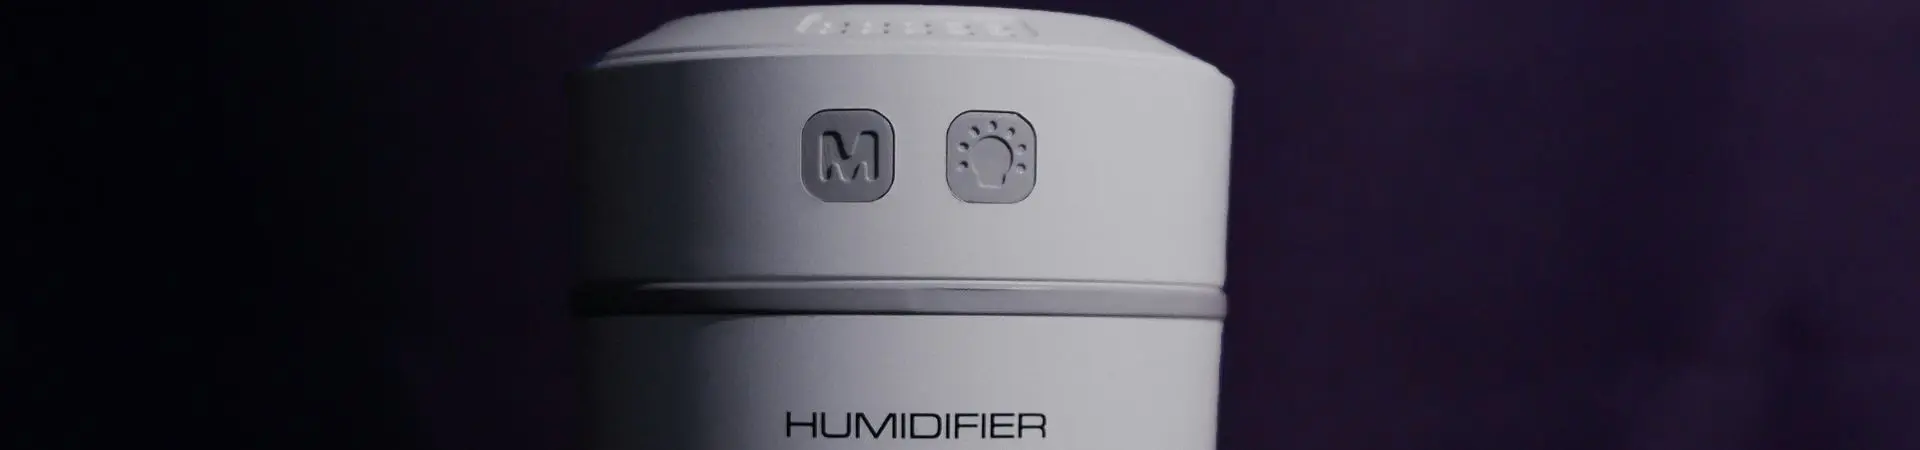 Qué es un humidificador y para qué sirve?